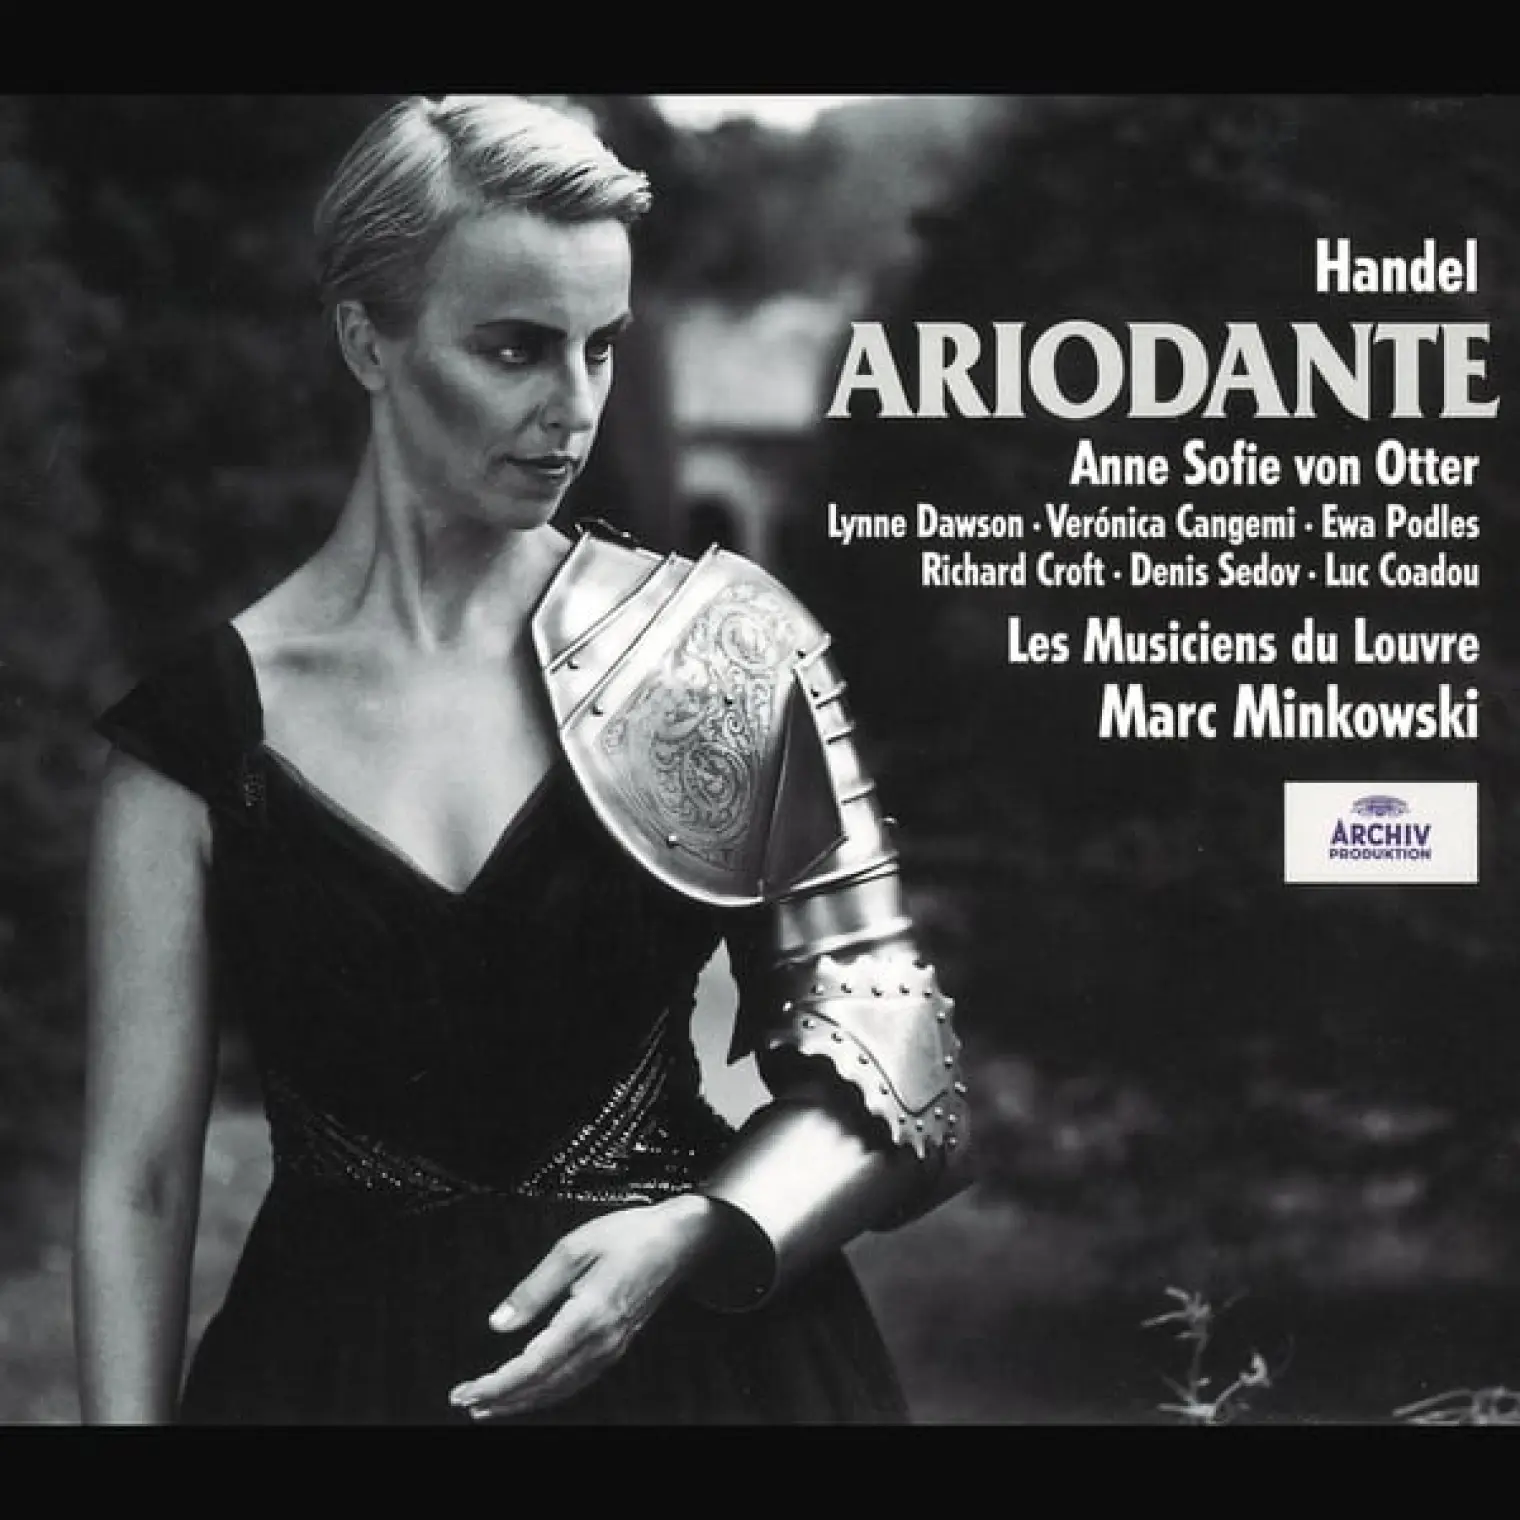 Handel: Ariodante -  Les Musiciens du Louvre 